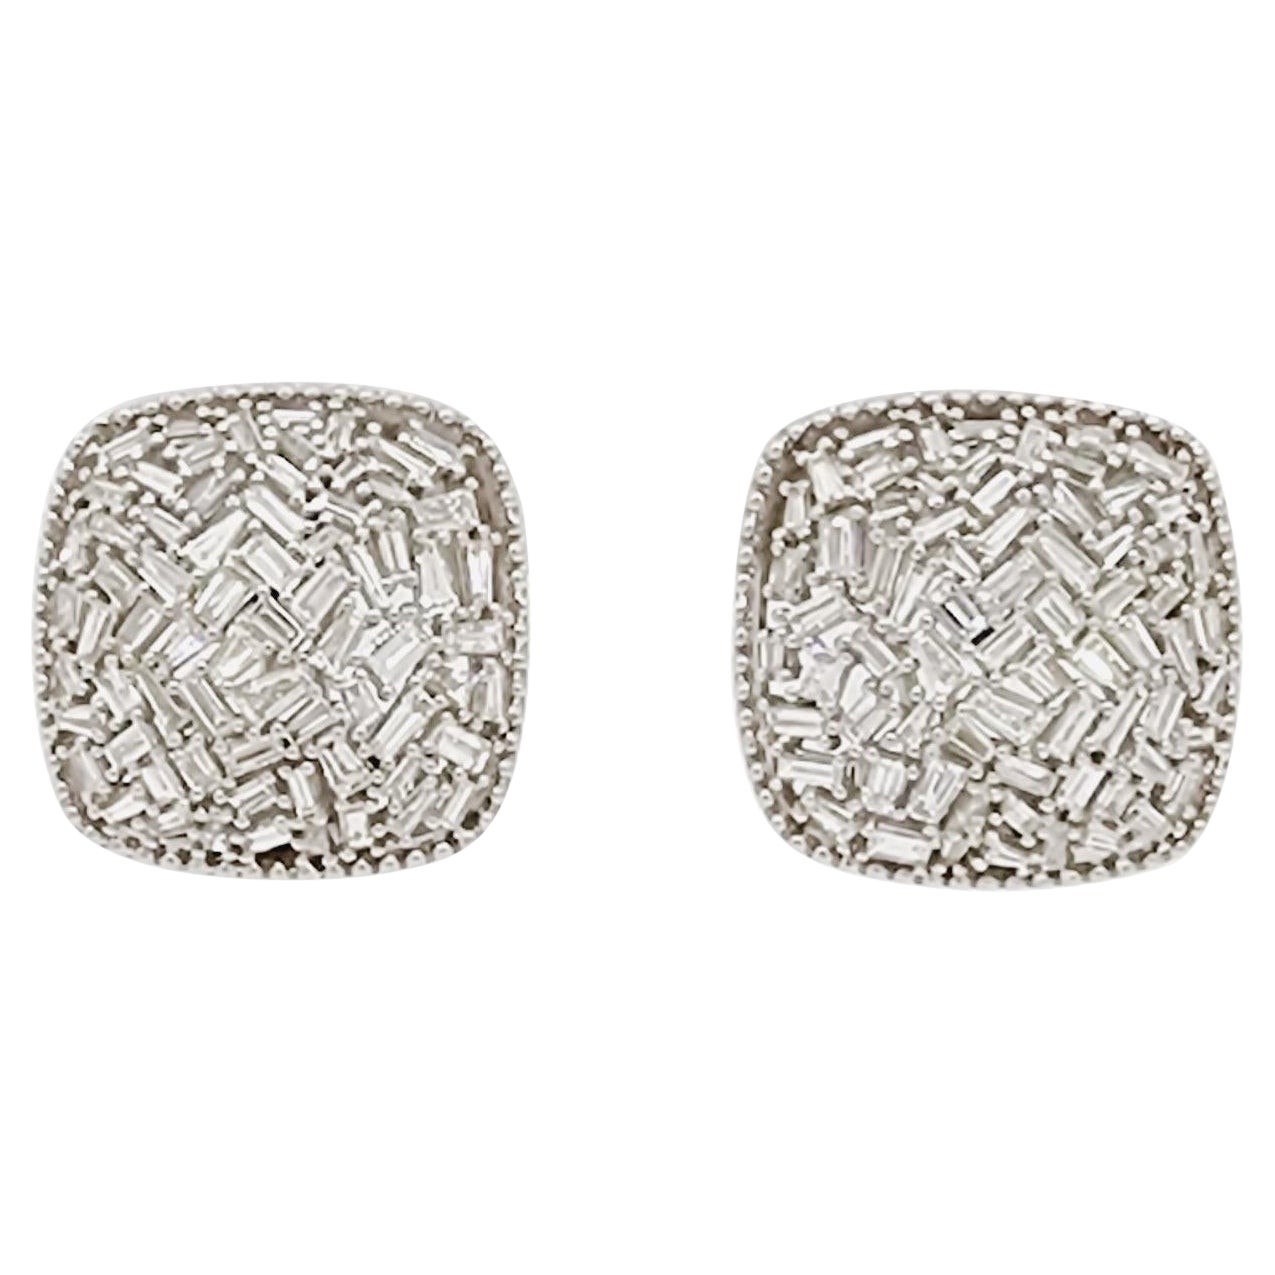 White Diamond Baguette Cluster Earrings in 18k White Gold